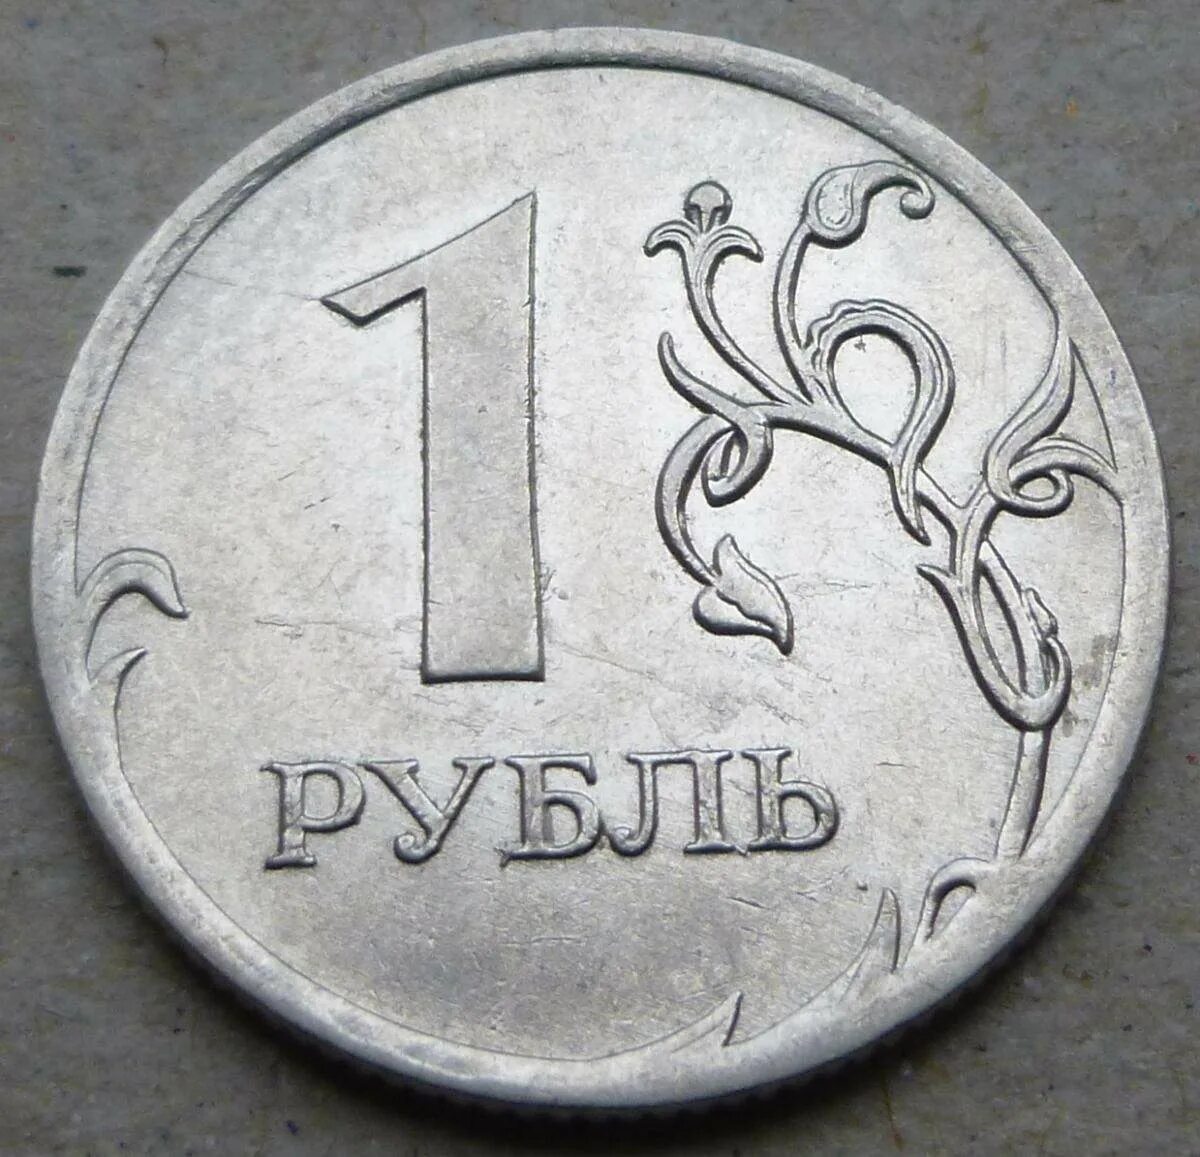 Рубль январь. 1 Рубль. Монеты рубли. Монета достоинством 1 рубль. Изображение монеты 1 рубль.